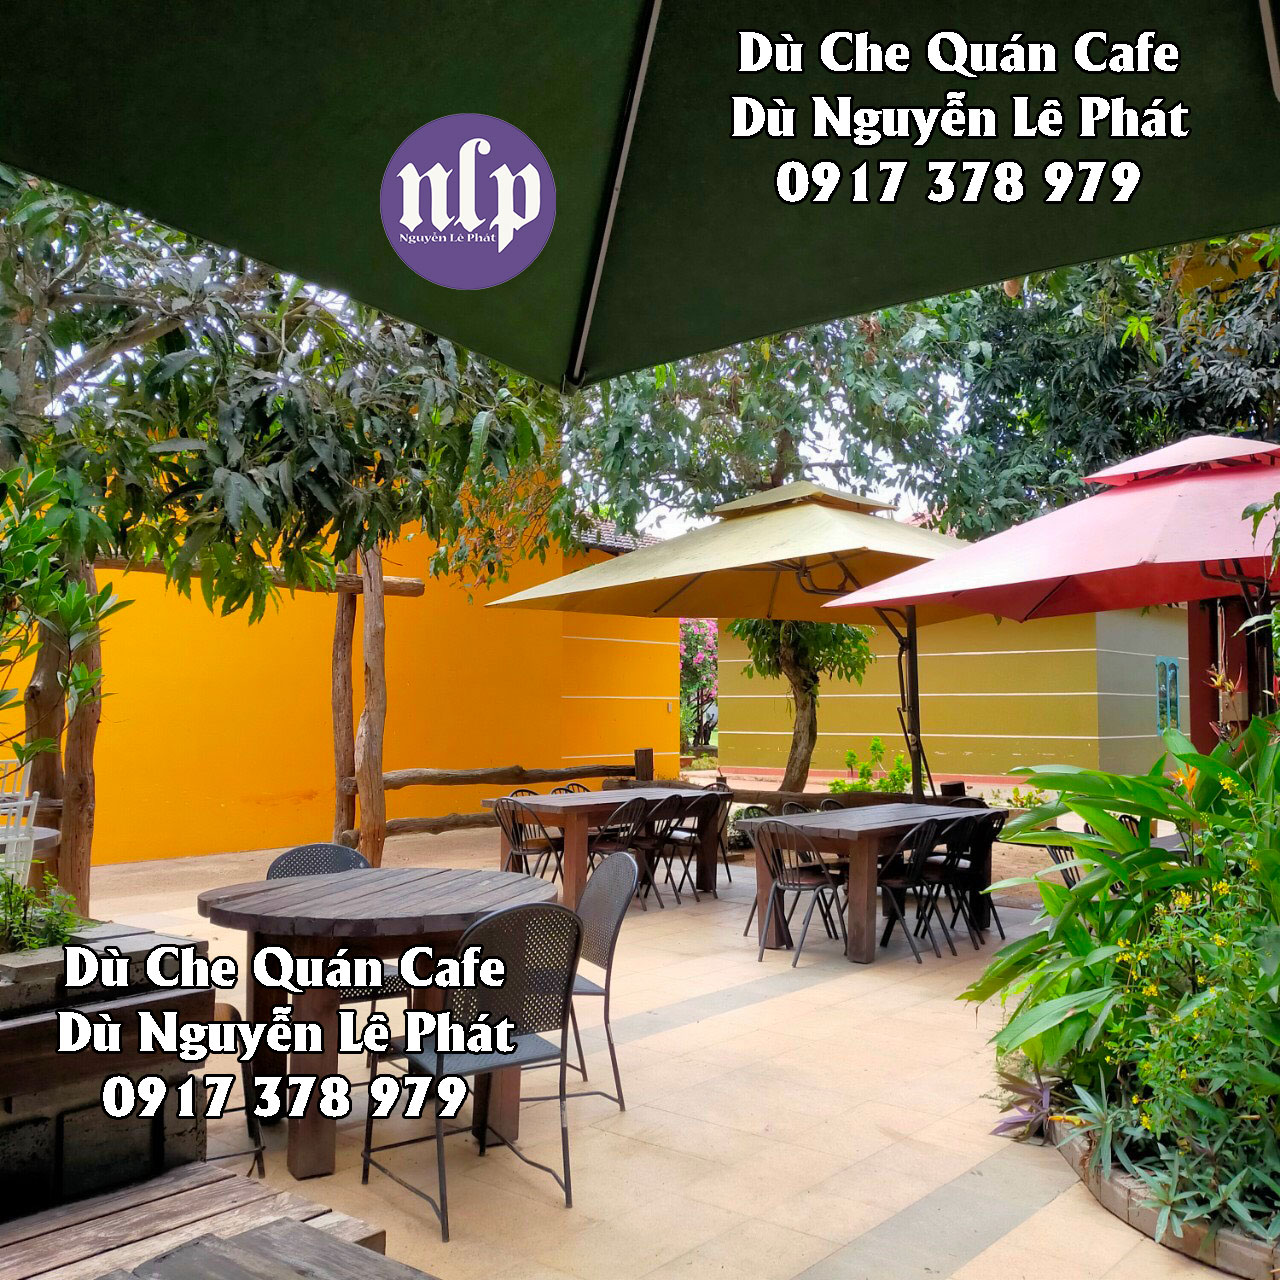 Dù Che Nắng Quán Cafe Tây Ninh